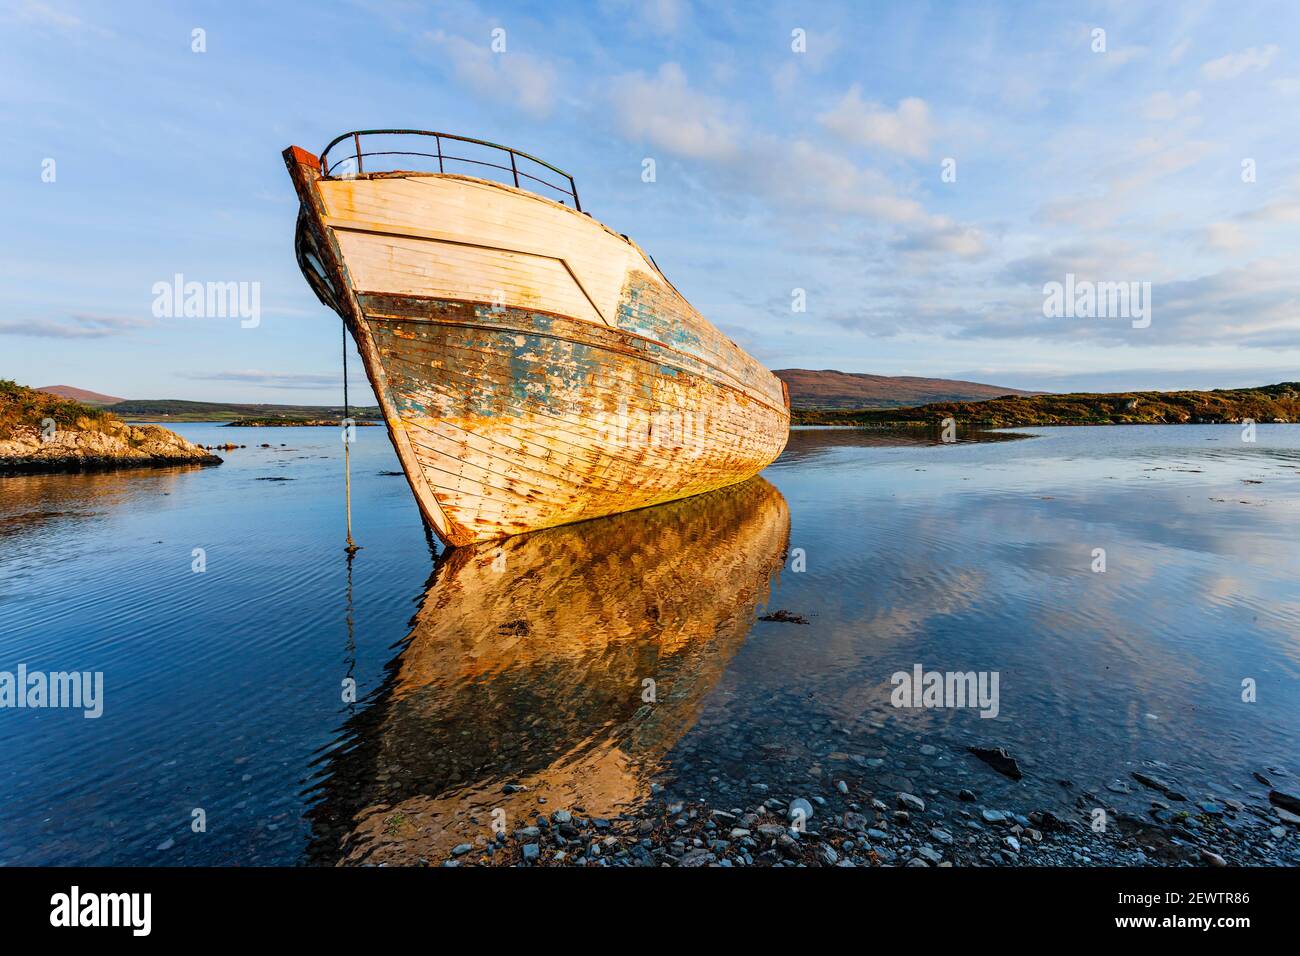 Abends fällt auf einem alten verfallenem Fischerboot in der Nähe des Dorfes Ahakista in Dunmanus Bay, West Cork, Irland auf dem Wild Atlantic Way Licht. Stockfoto